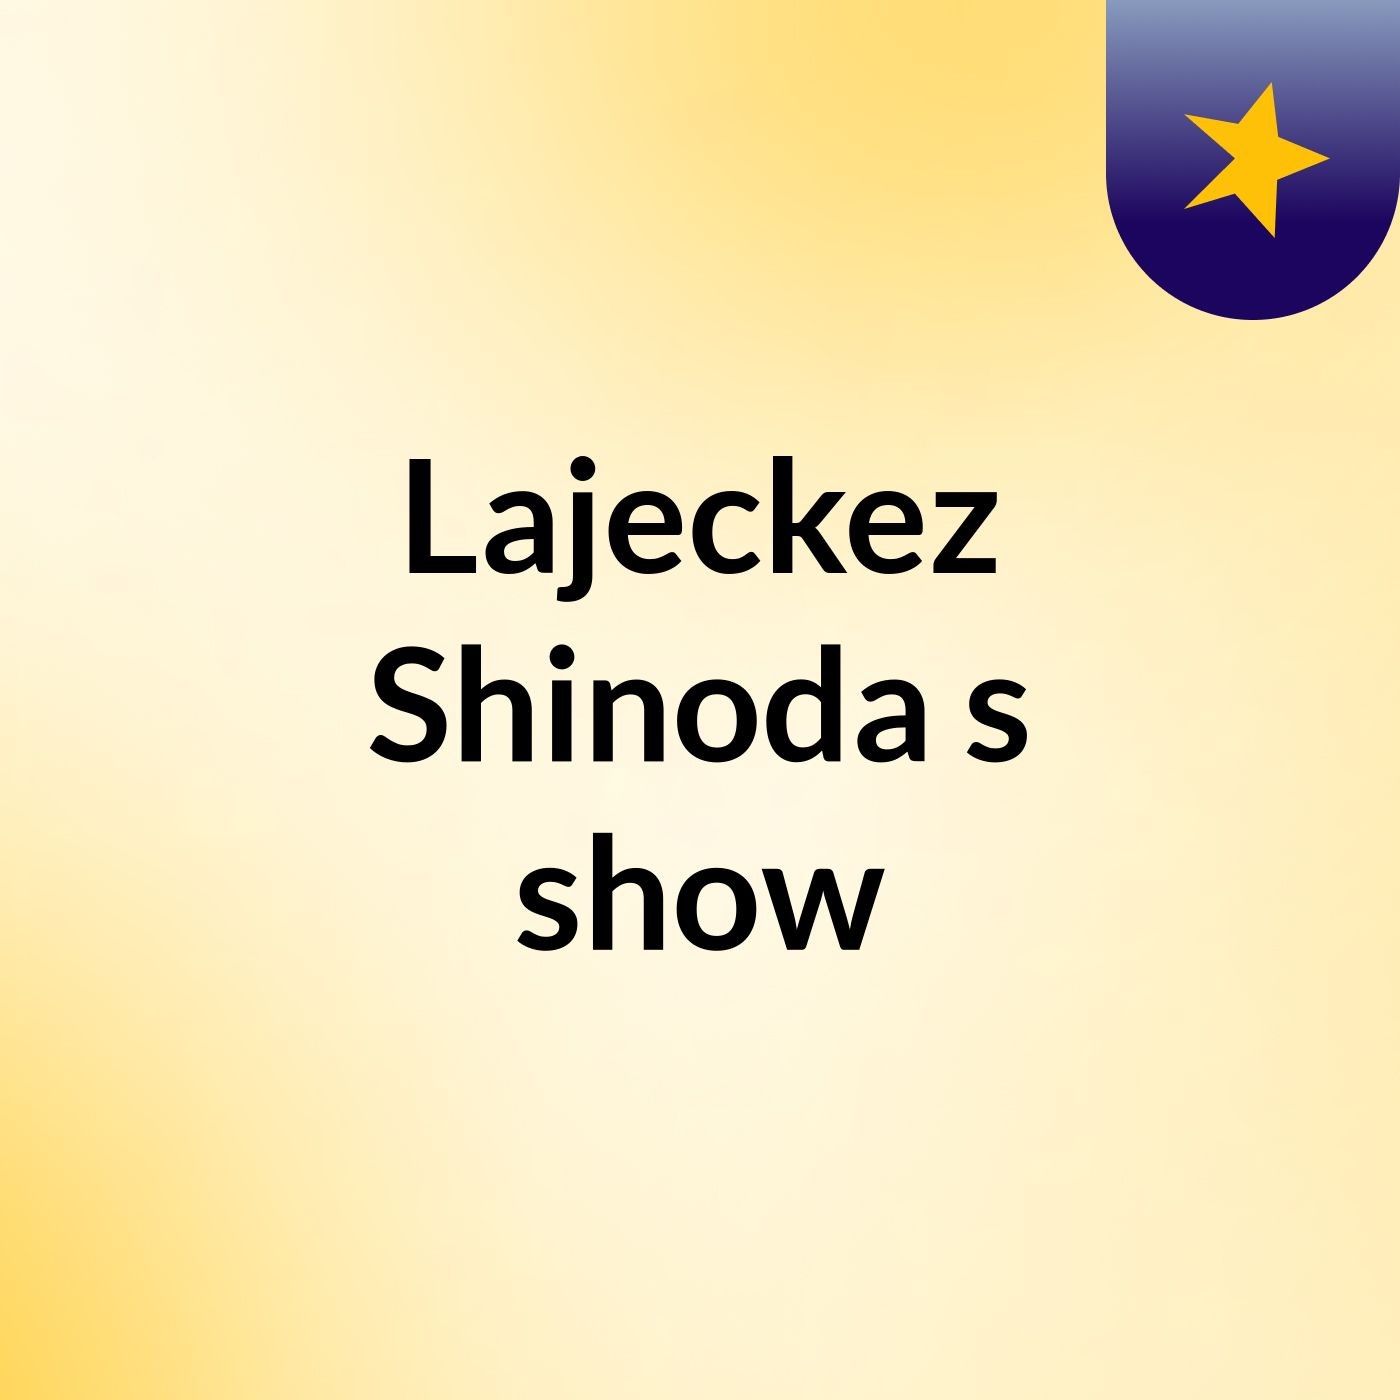 Episode 5 - Lajeckez Shinoda's show